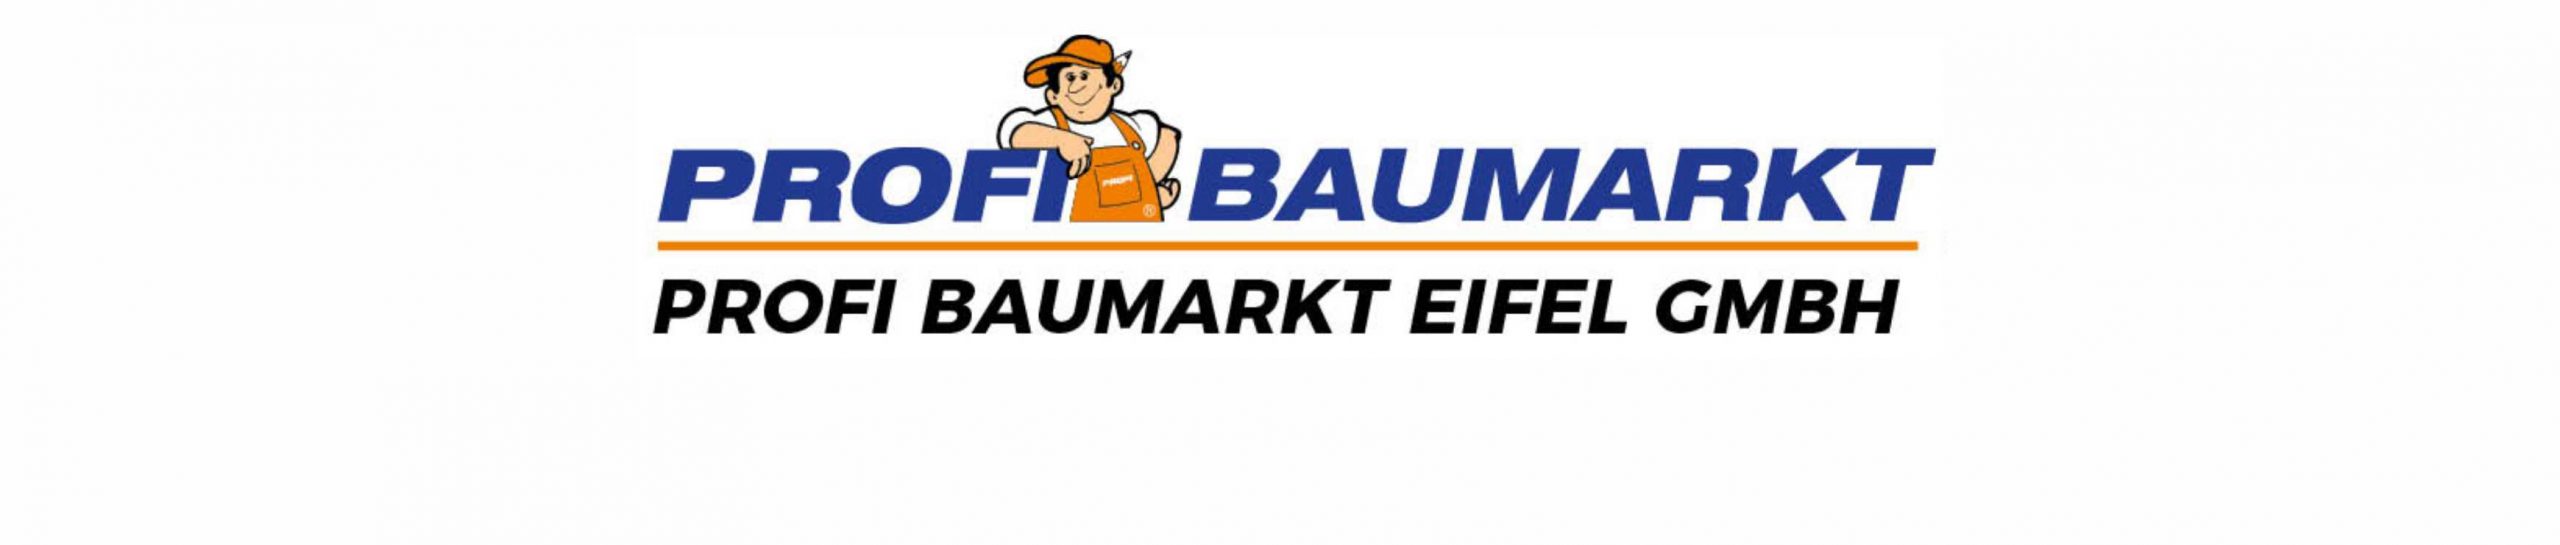 Profi Baumarkt Eifel GmbH - Bad Münstereifel